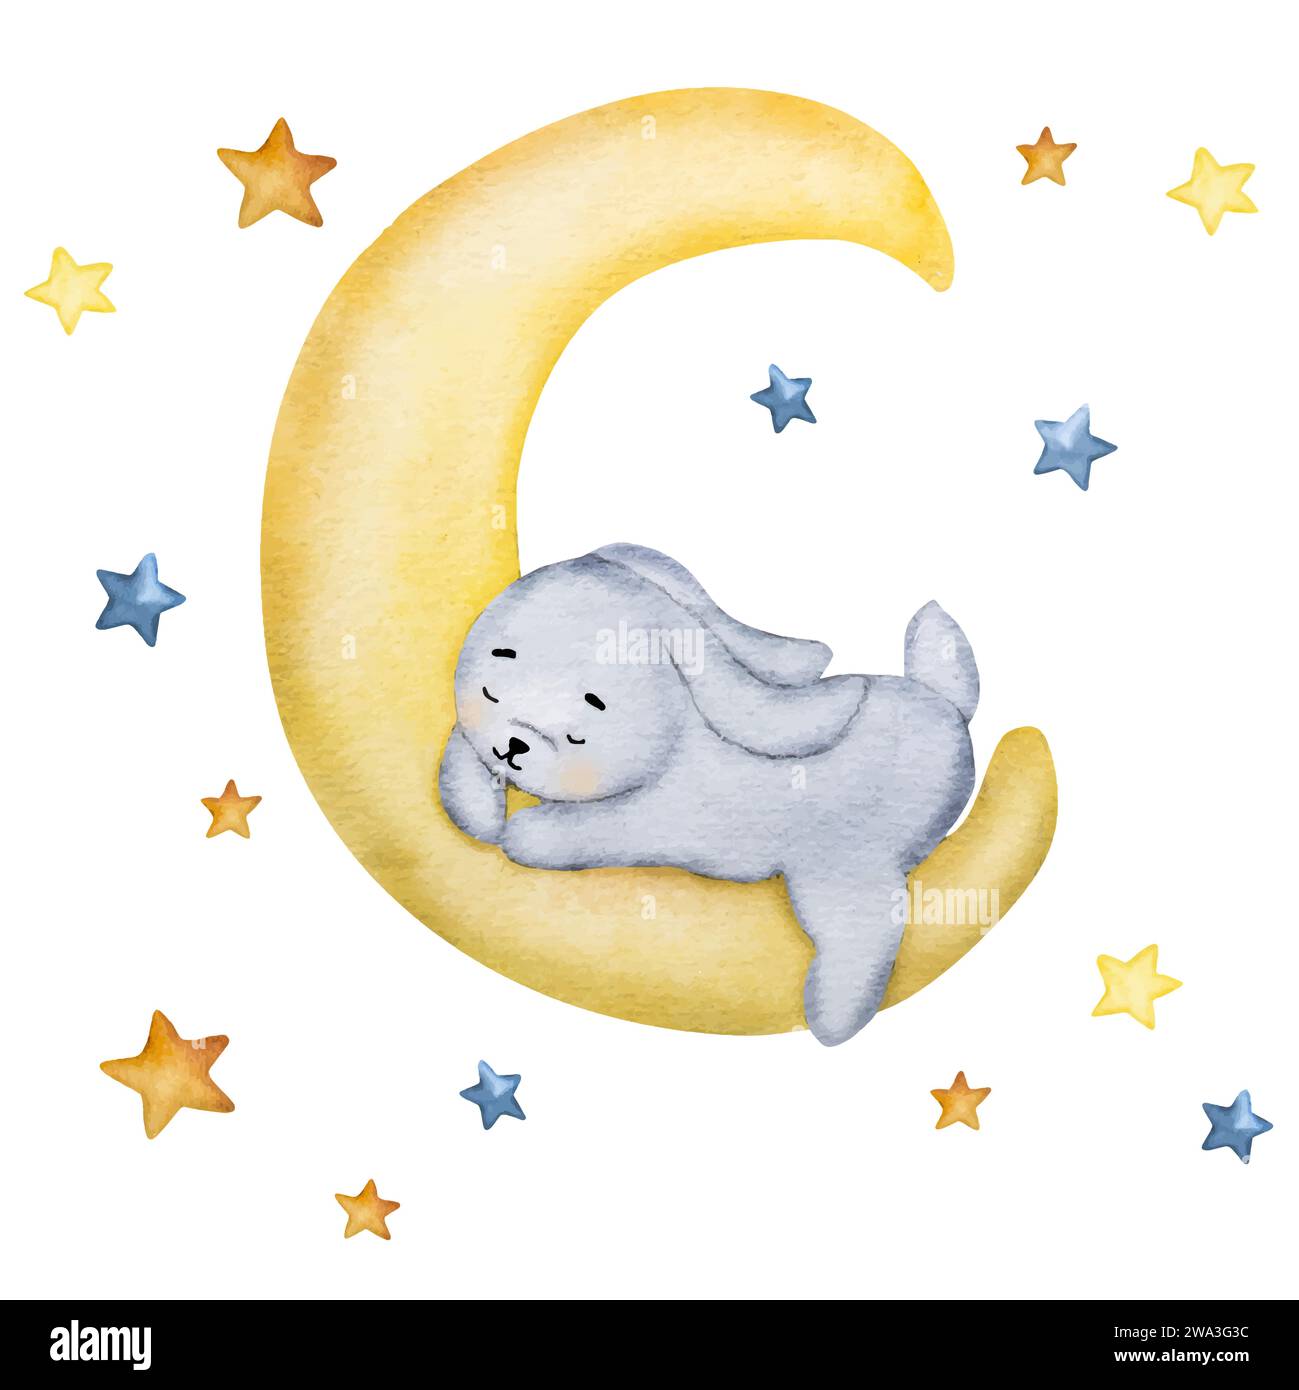 Mignon lapin dormant sur la peinture à l'aquarelle de lune pour carte postale d'enfant de bébé. Dessin aquarelle de lapin de dessin animé avec ciel étoilé pour la décoration des enfants Illustration de Vecteur